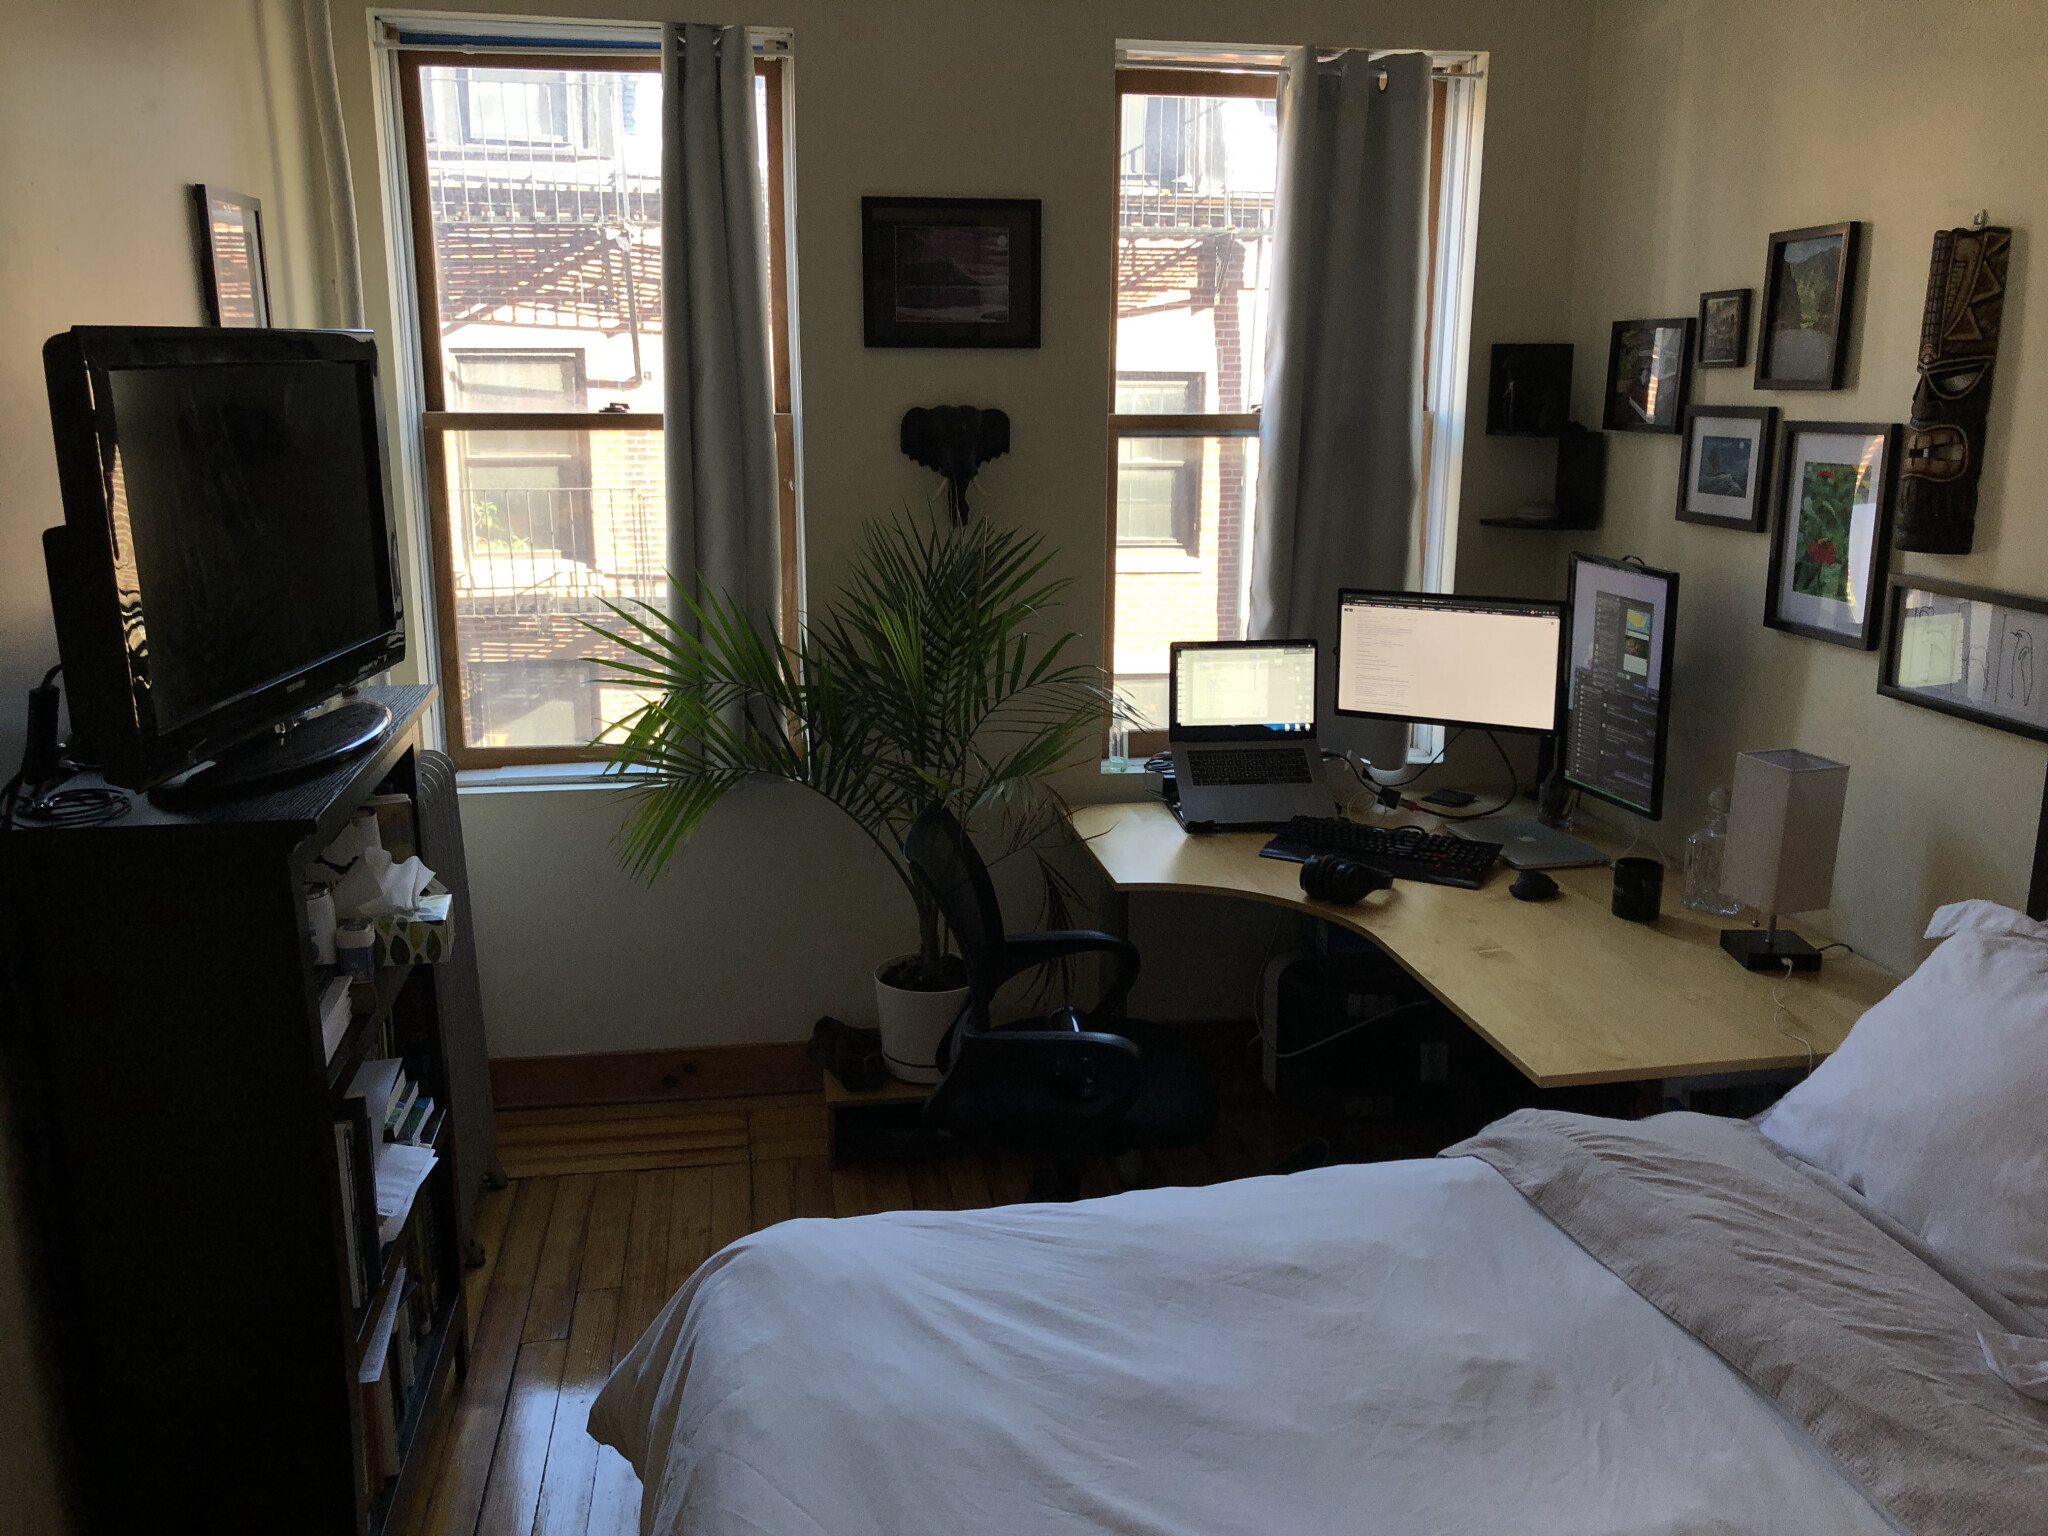 Photos of apartment on Joy St.,Boston MA 02114